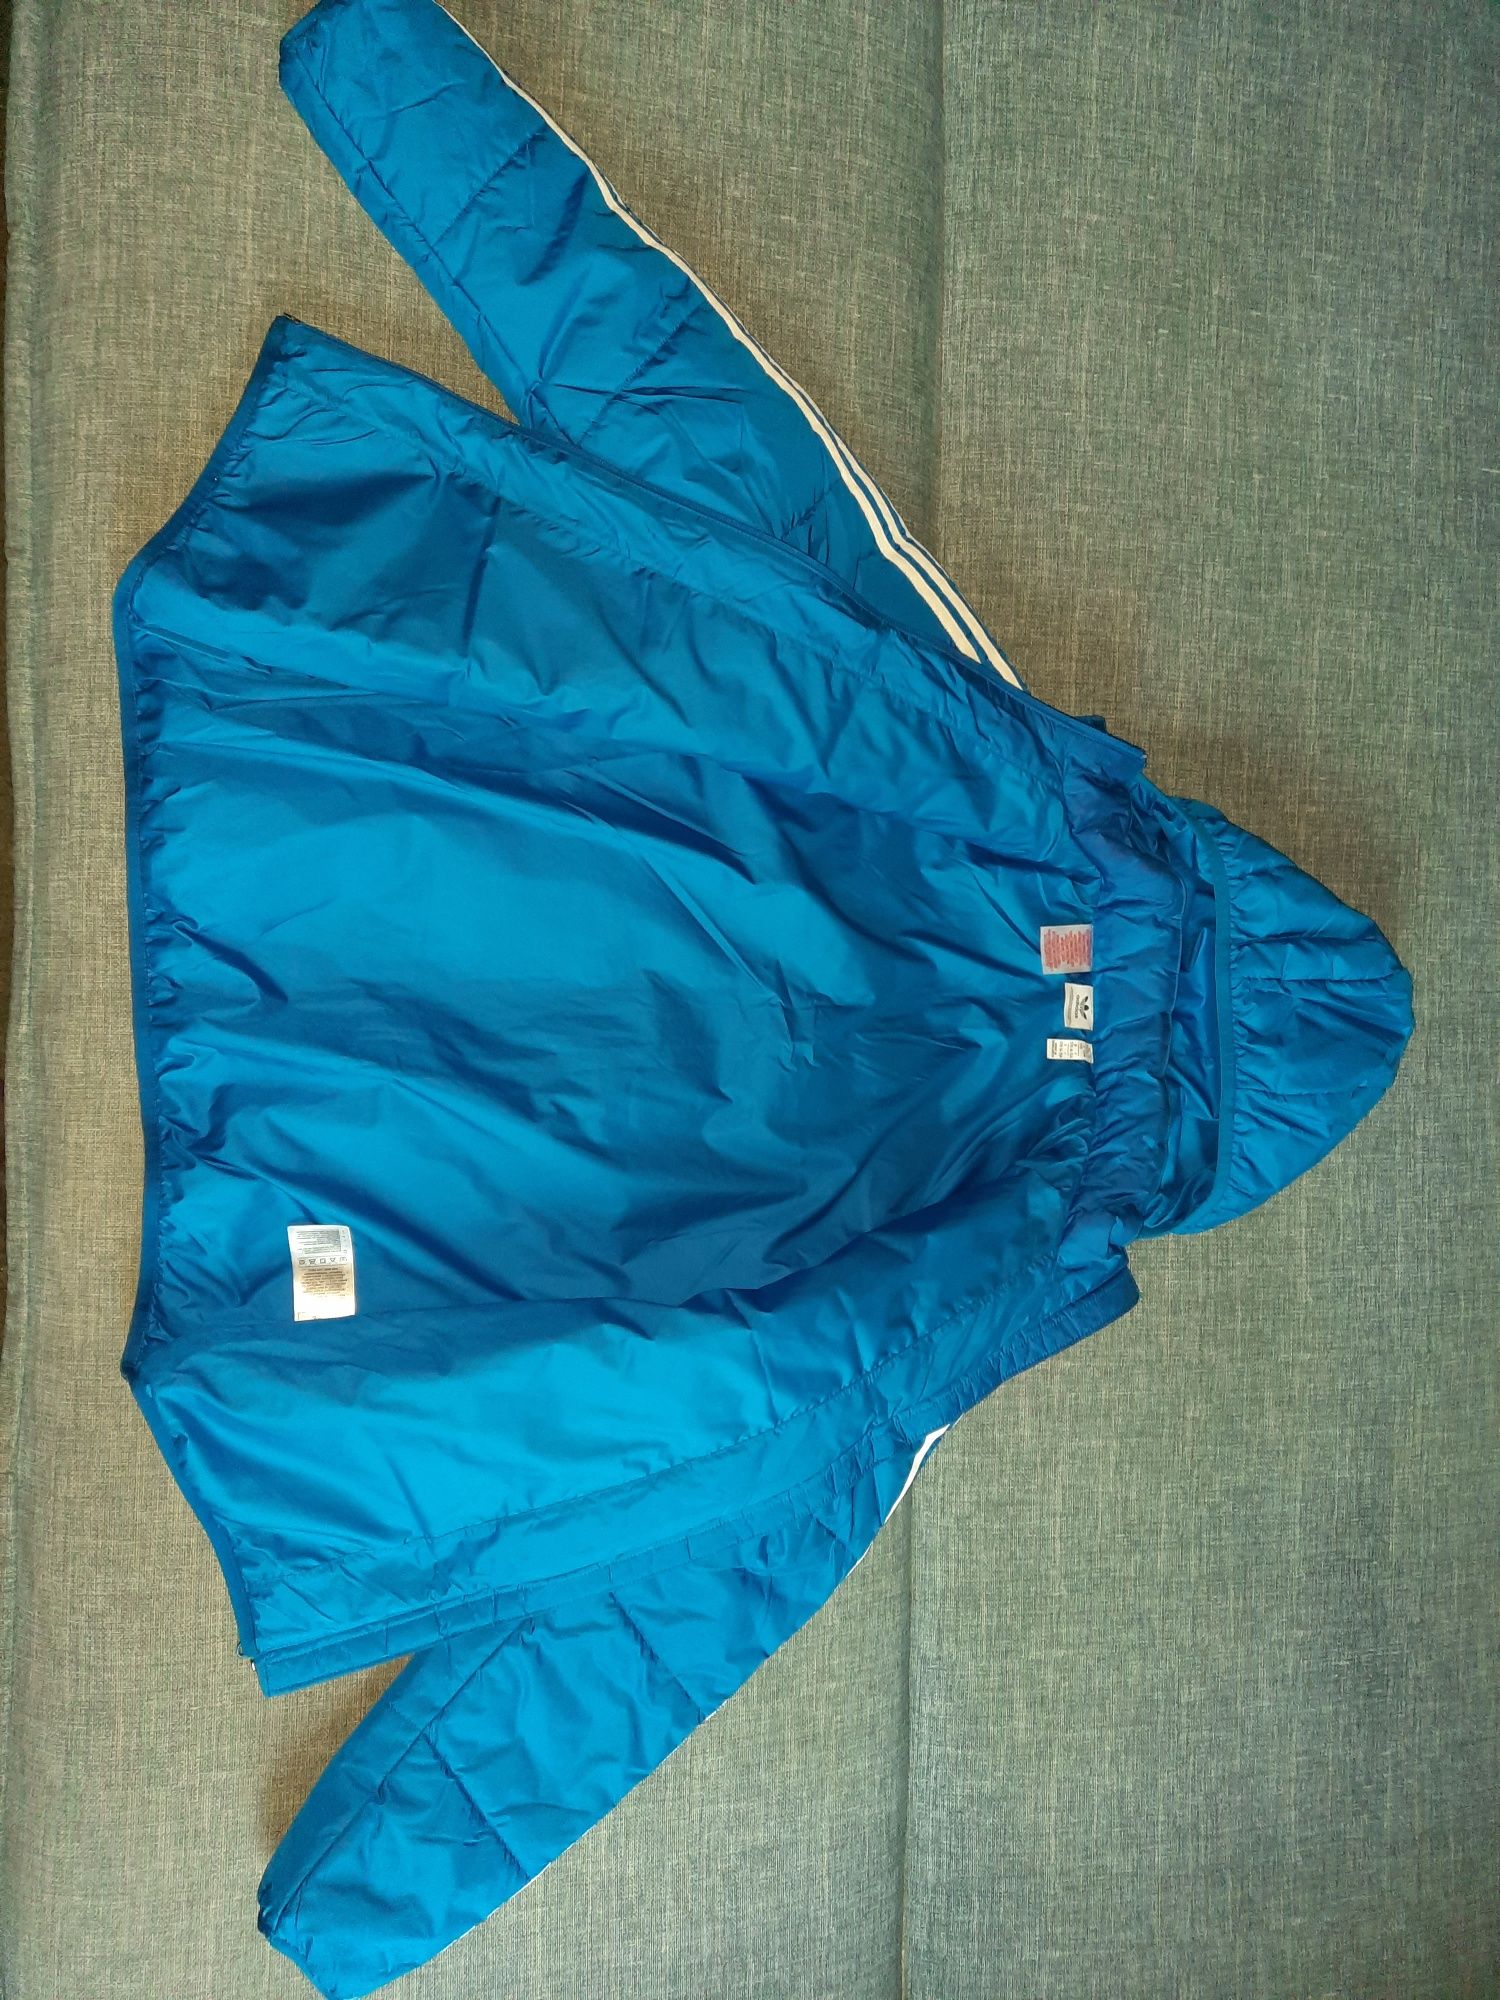 Куртка Adidas демисезонная р. 170